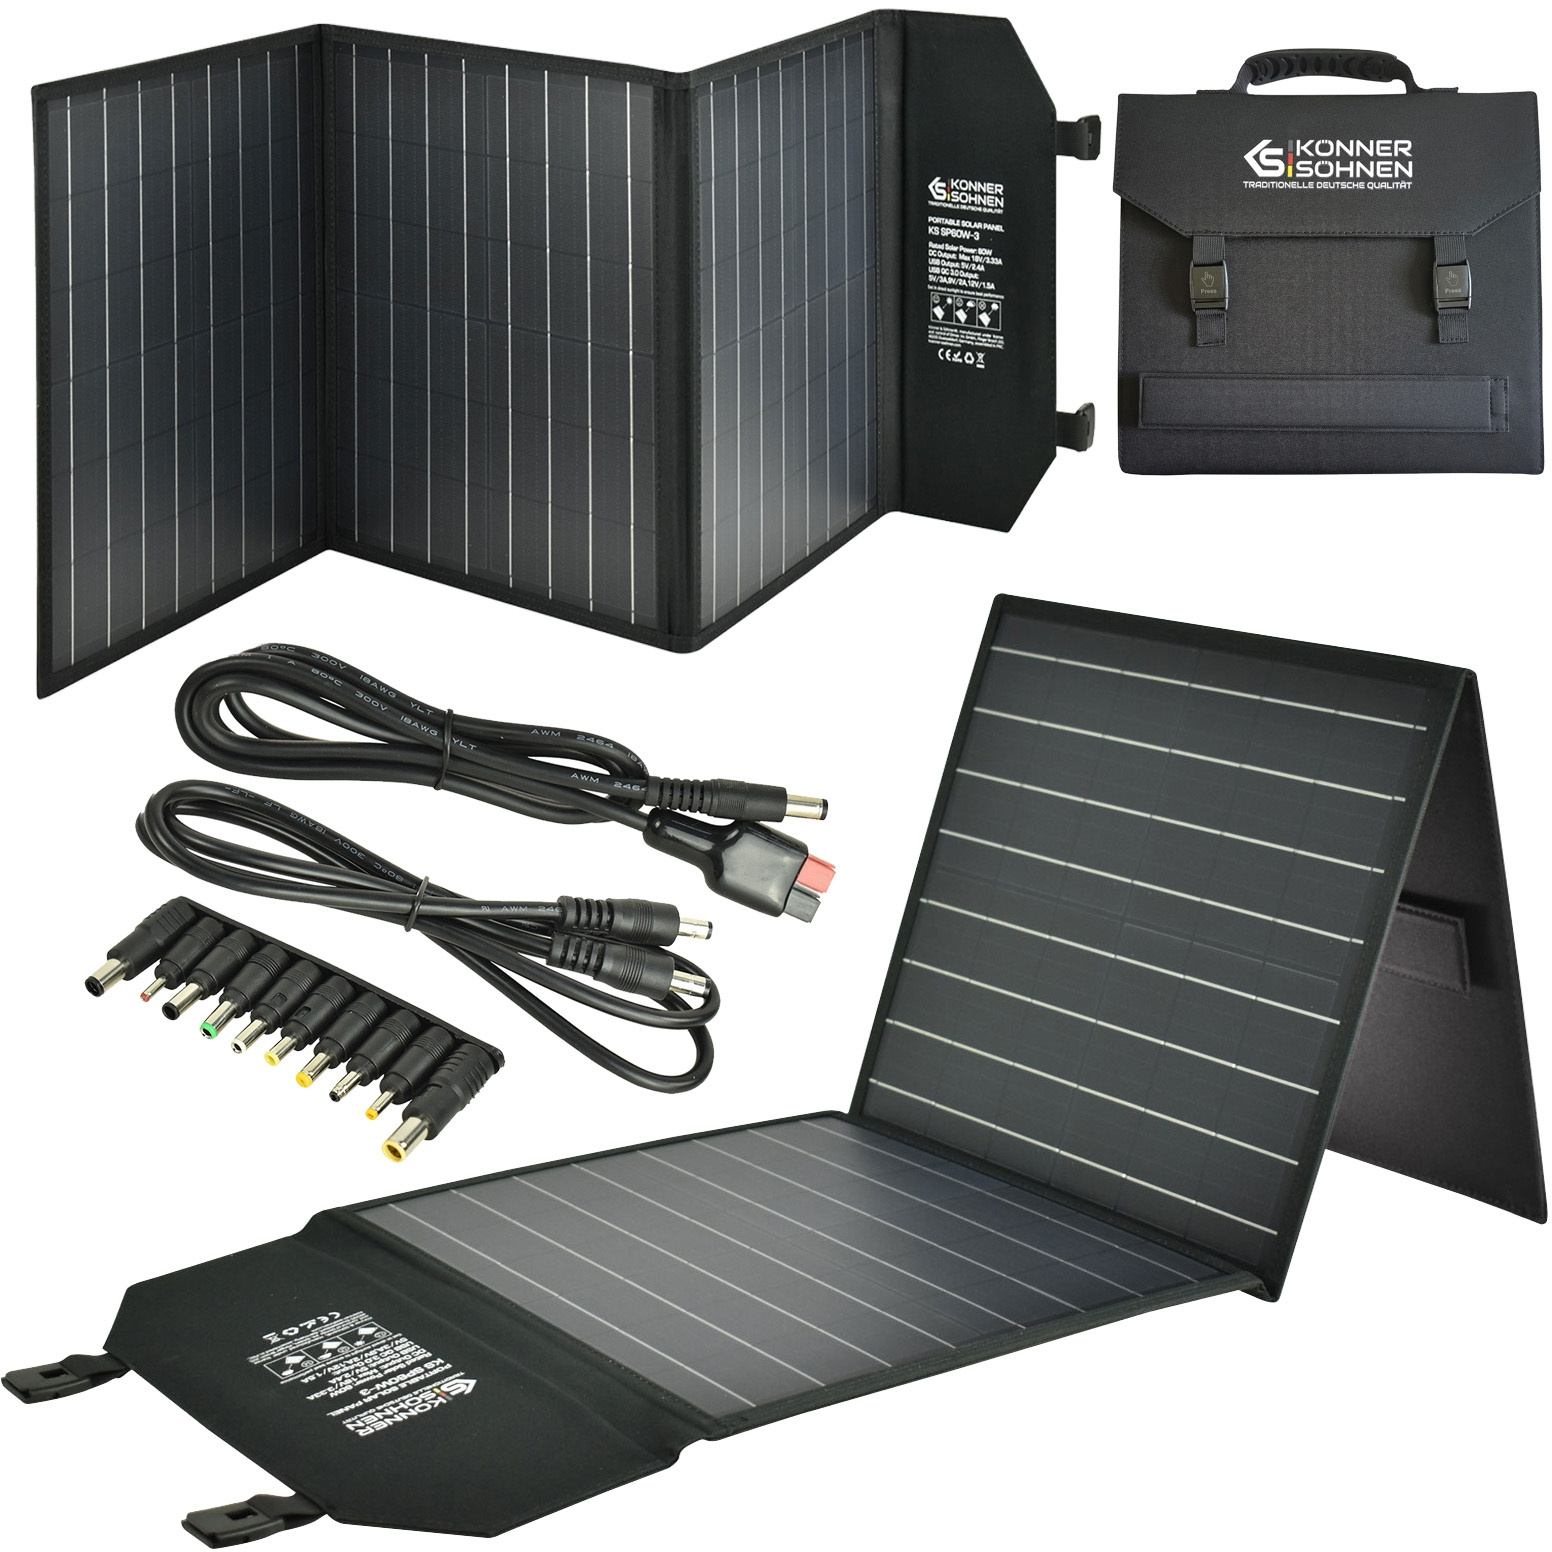 Image of Przenośny panel solarny travel 60W KS SP60W-3 USB SKŁADANY Könner&Söhnen KS